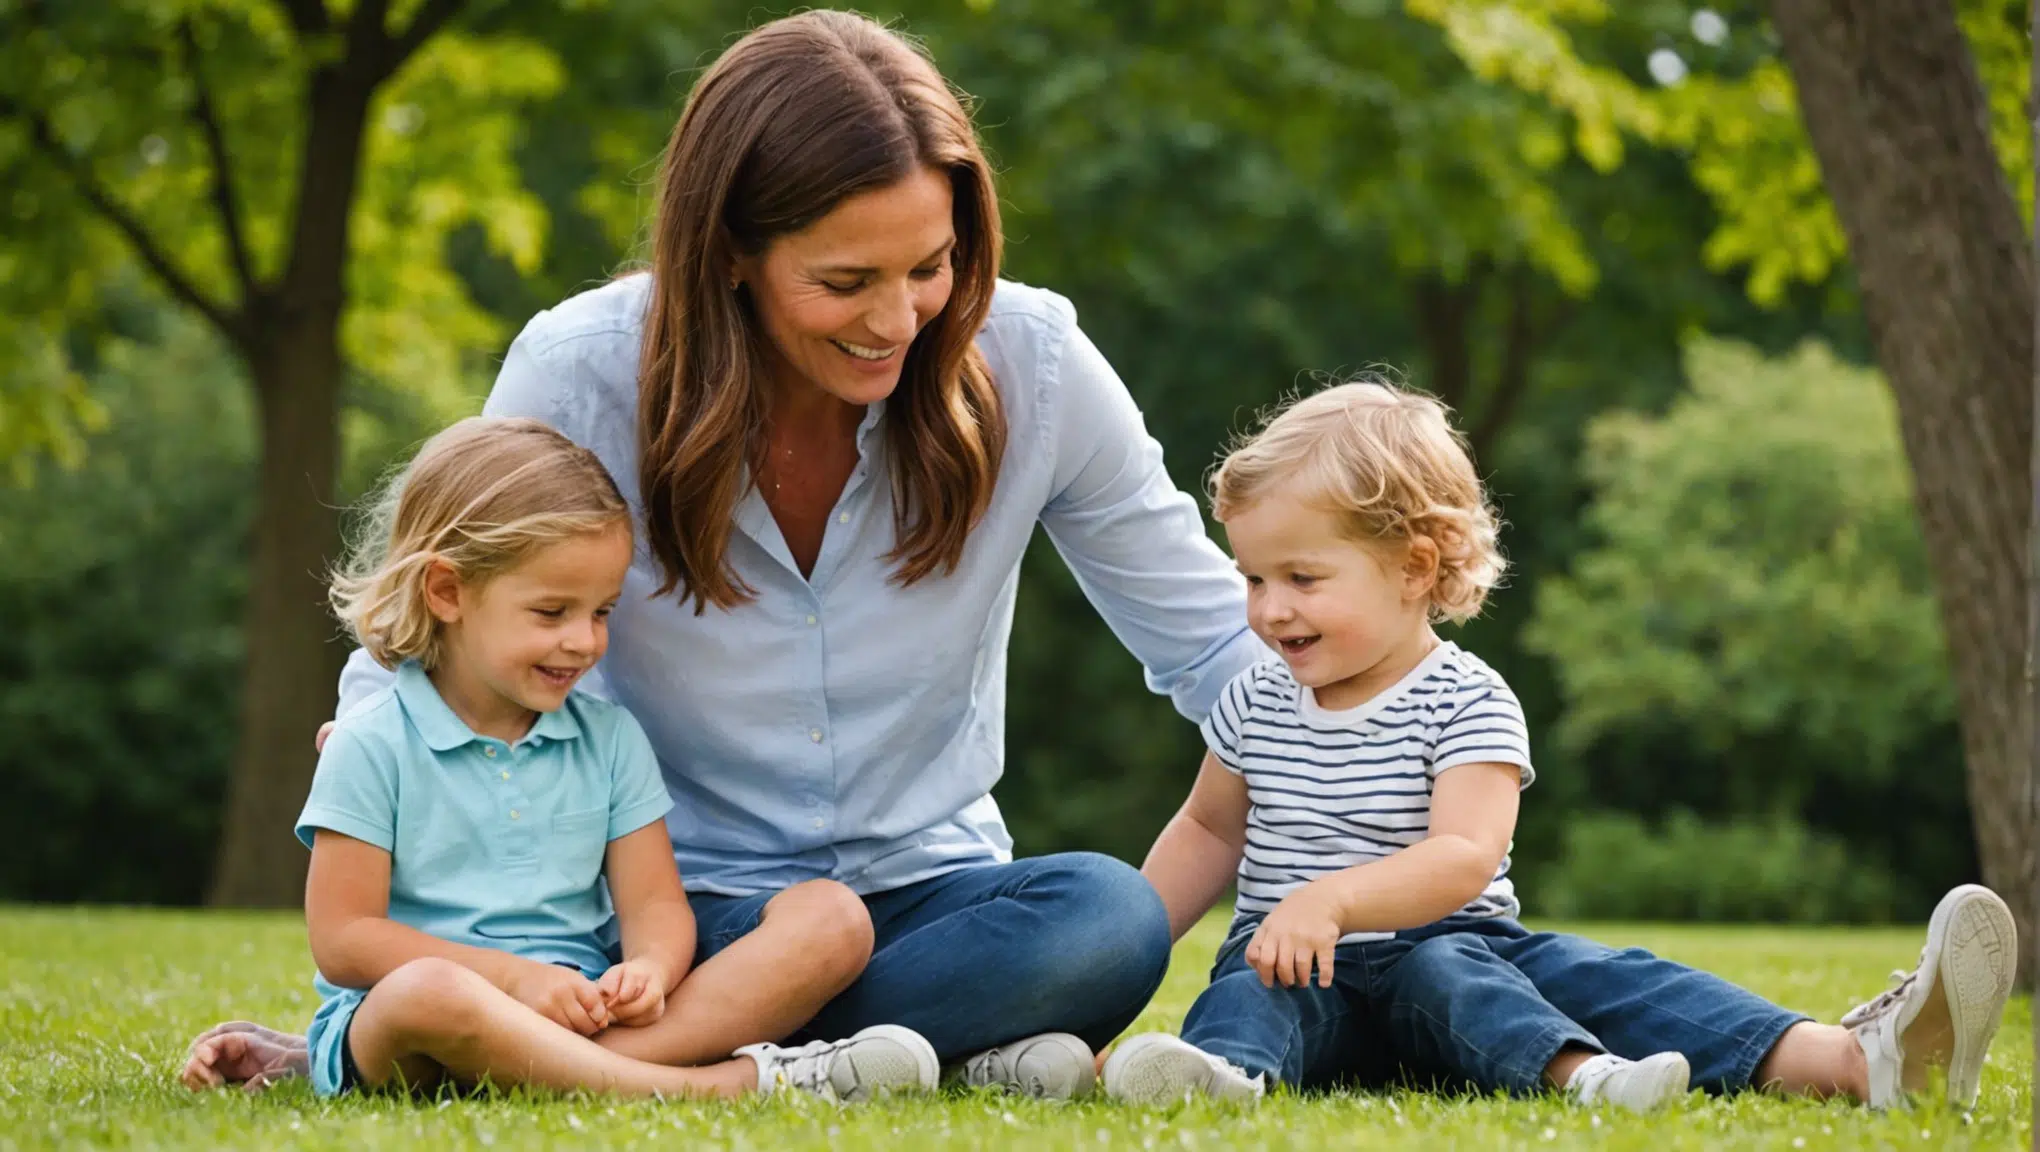 découvrez les plaisirs simples et authentiques de la parentalité dans cet article inspirant. apprenez à savourer chaque instant avec votre enfant et à célébrer ces moments uniques.